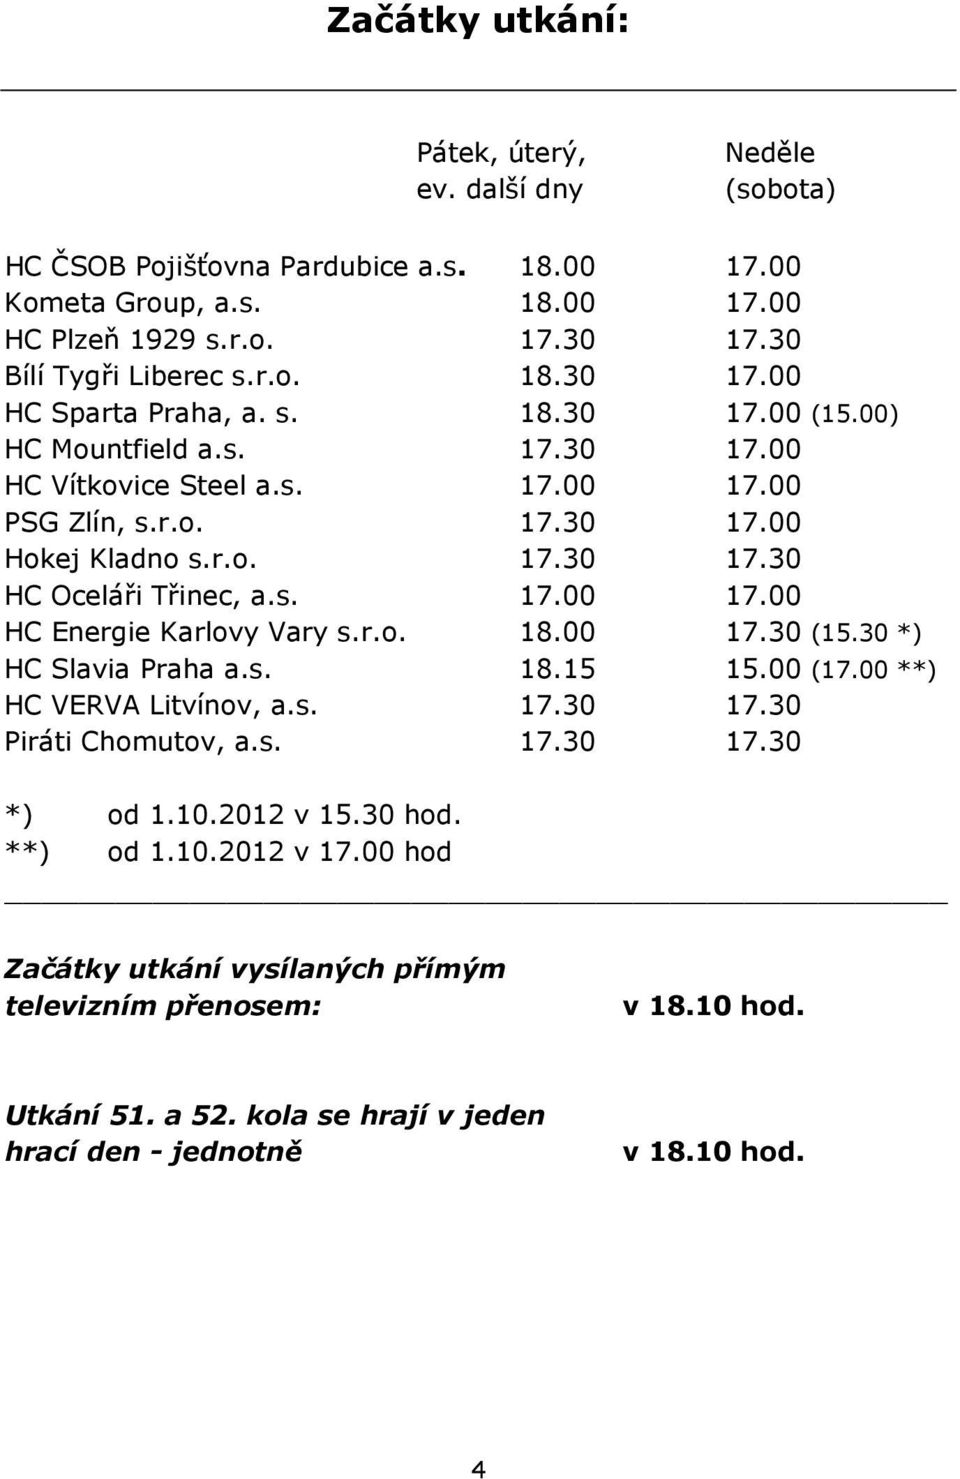 r.o. 18.00 17.30 (15.30 *) HC Slavia Praha a.s. 18.15 15.00 (17.00 **) HC VERVA Litvínov, a.s. 17.30 17.30 Piráti Chomutov, a.s. 17.30 17.30 *) od 1.10.2012 v 15.30 hod. **) od 1.10.2012 v 17.